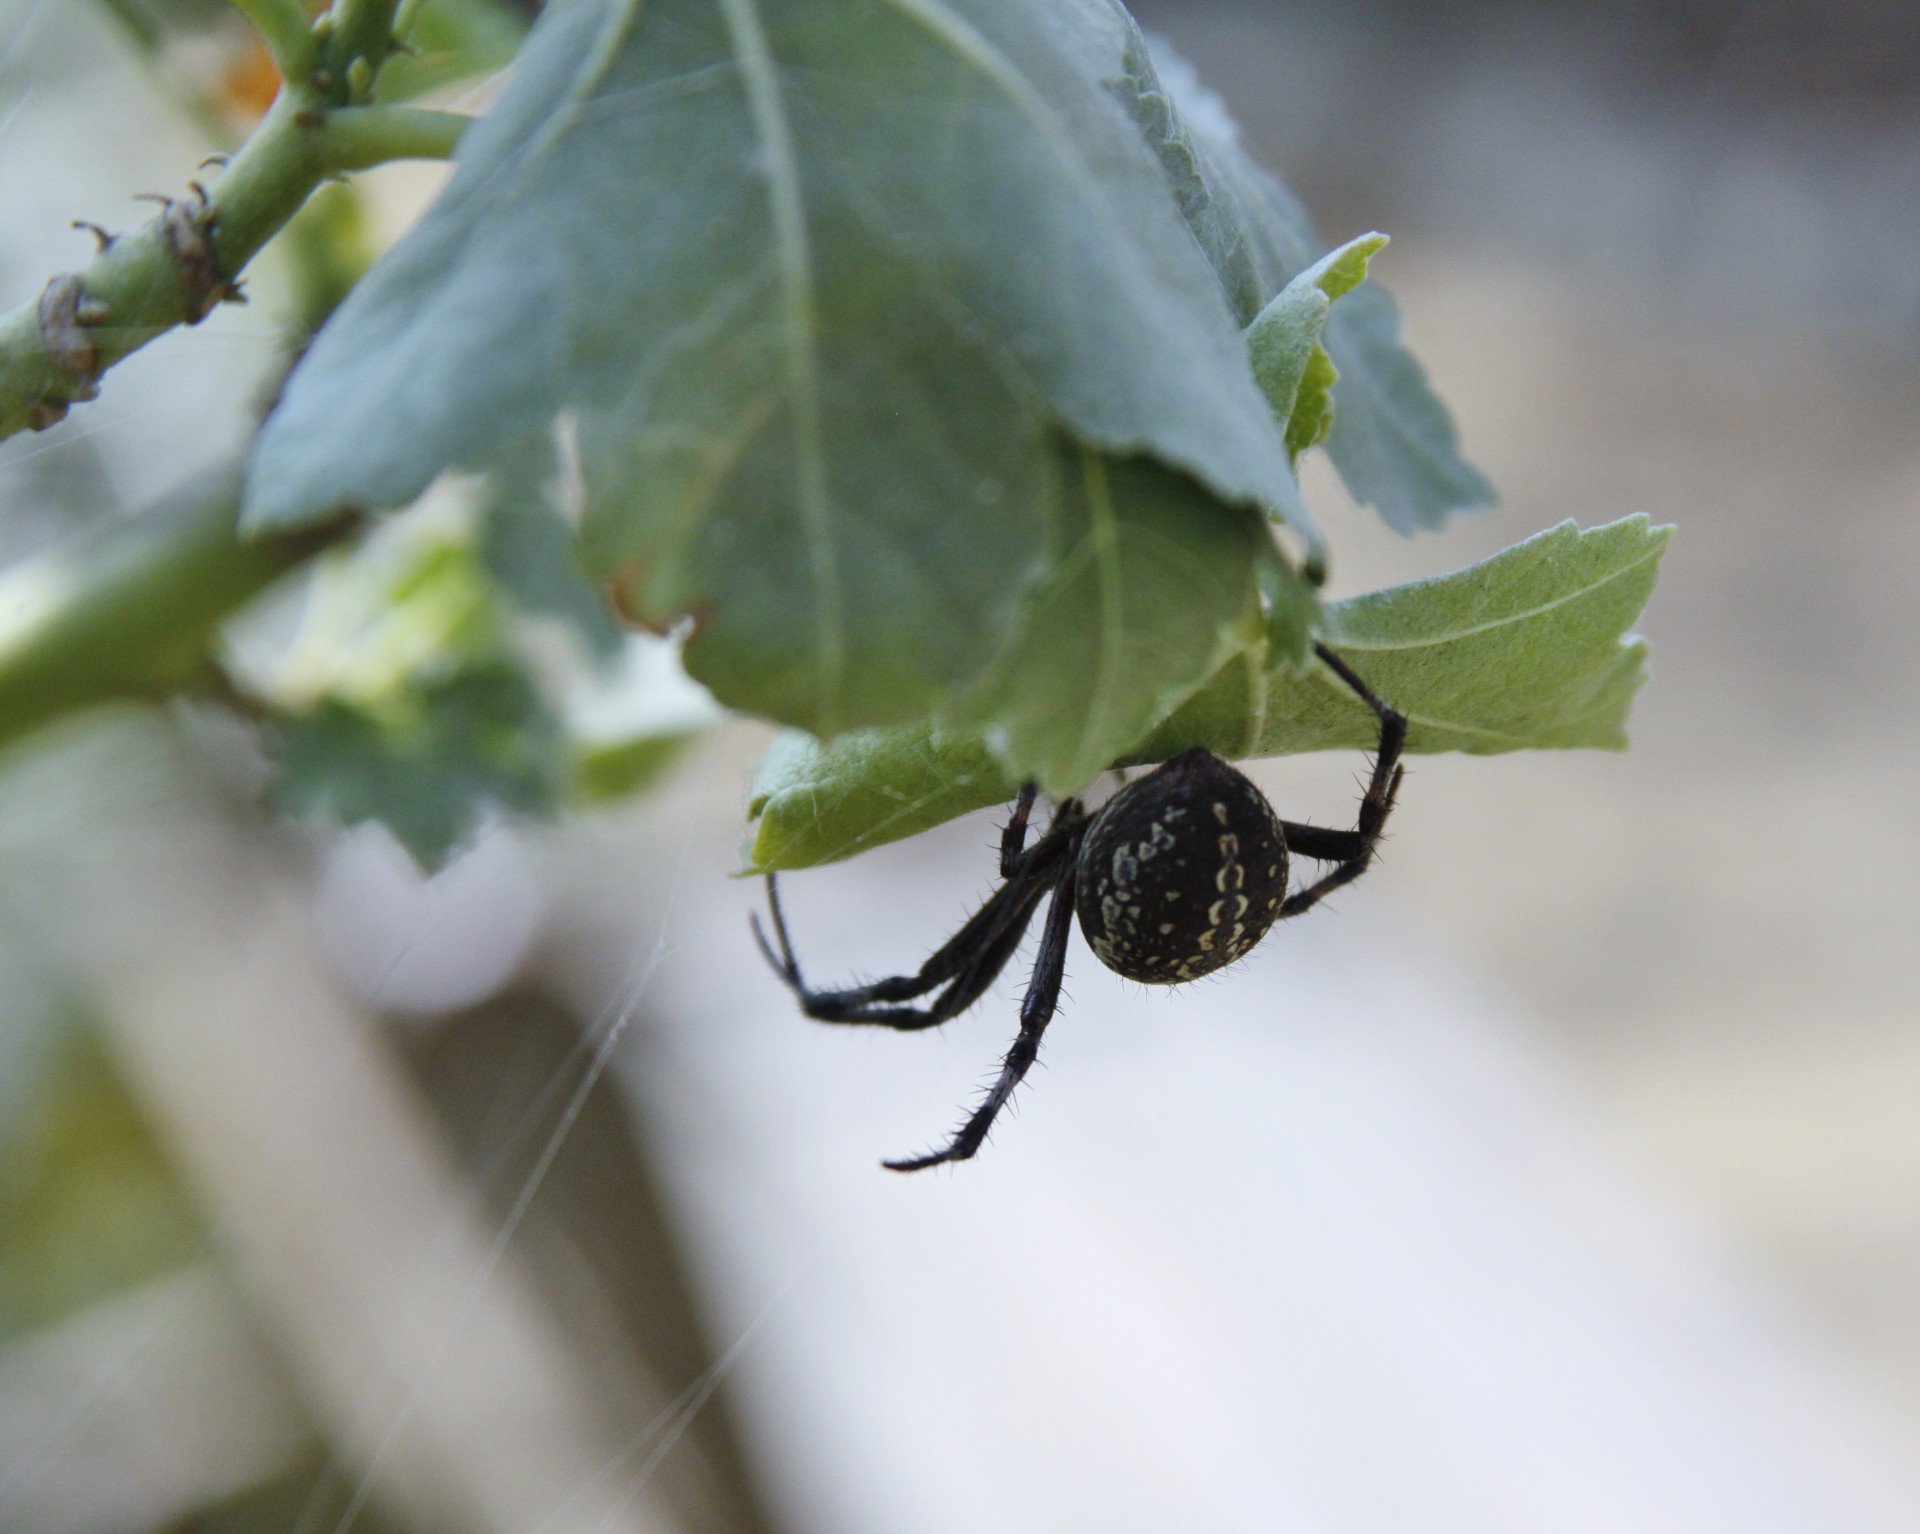 Black Spider On Leaf